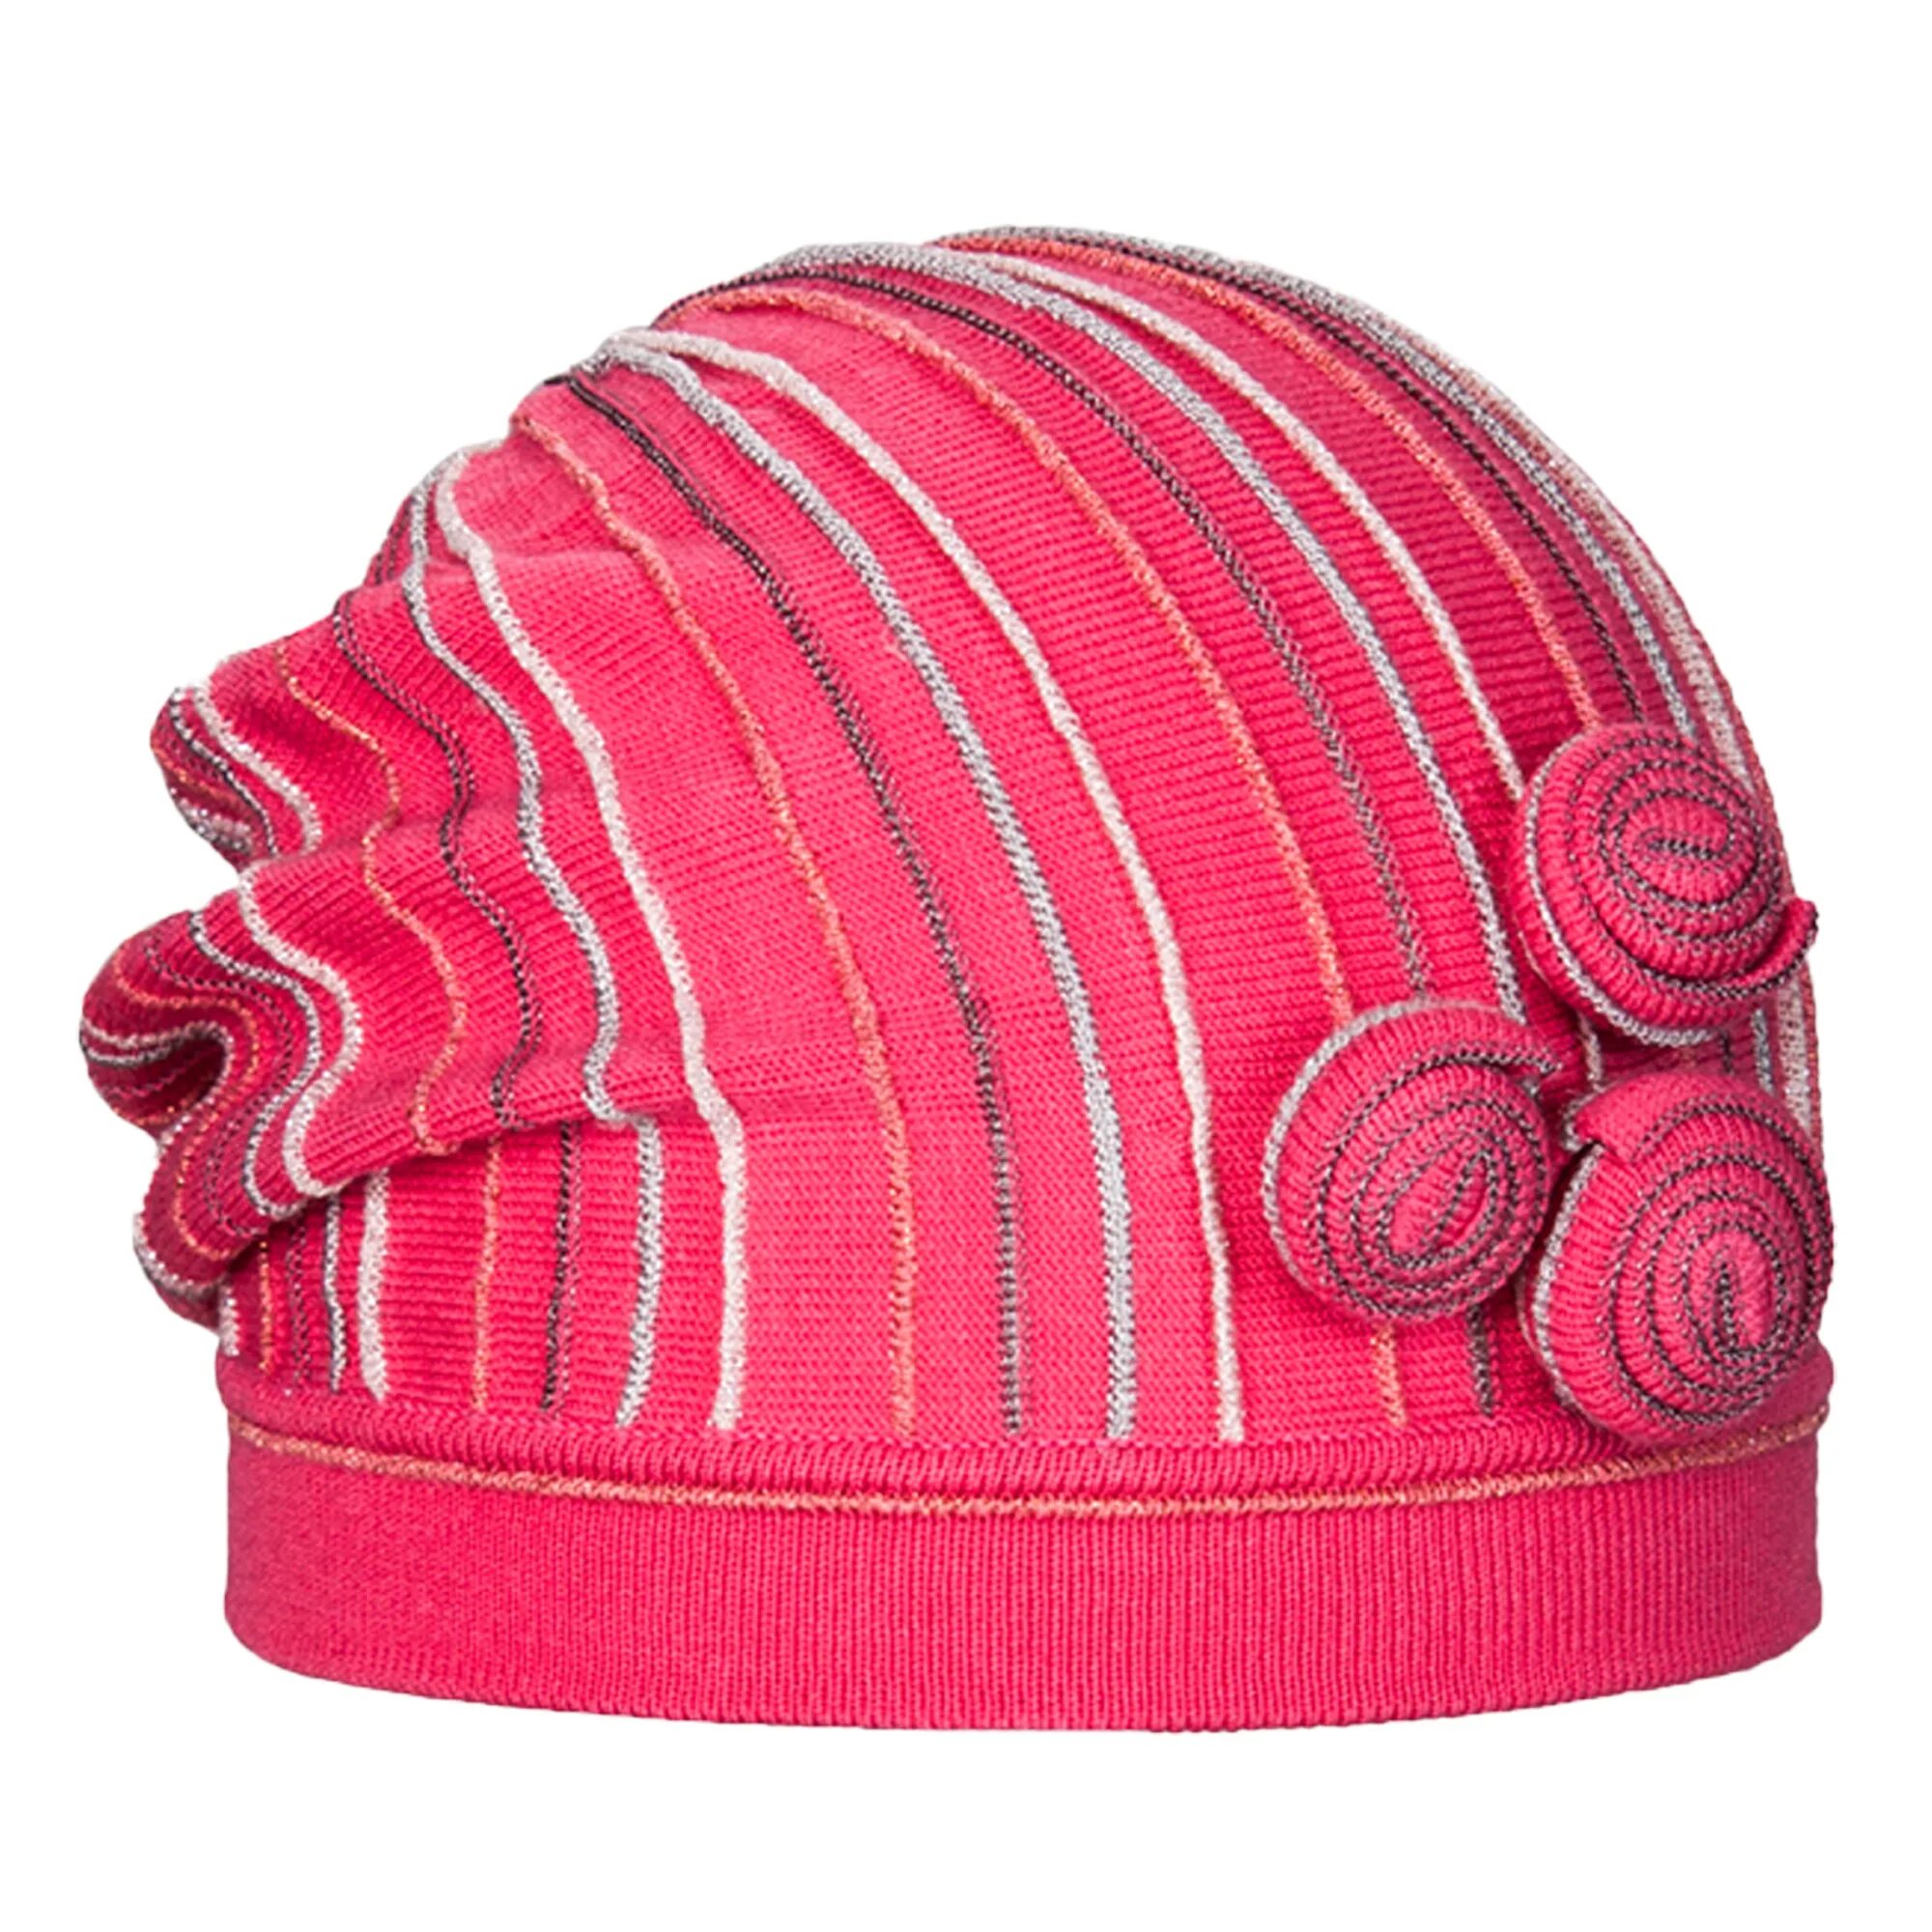 Marhatter mgh12290 малиновый шапка. Розовая шапка. Малиновая шапка. Головной убор, розовый.